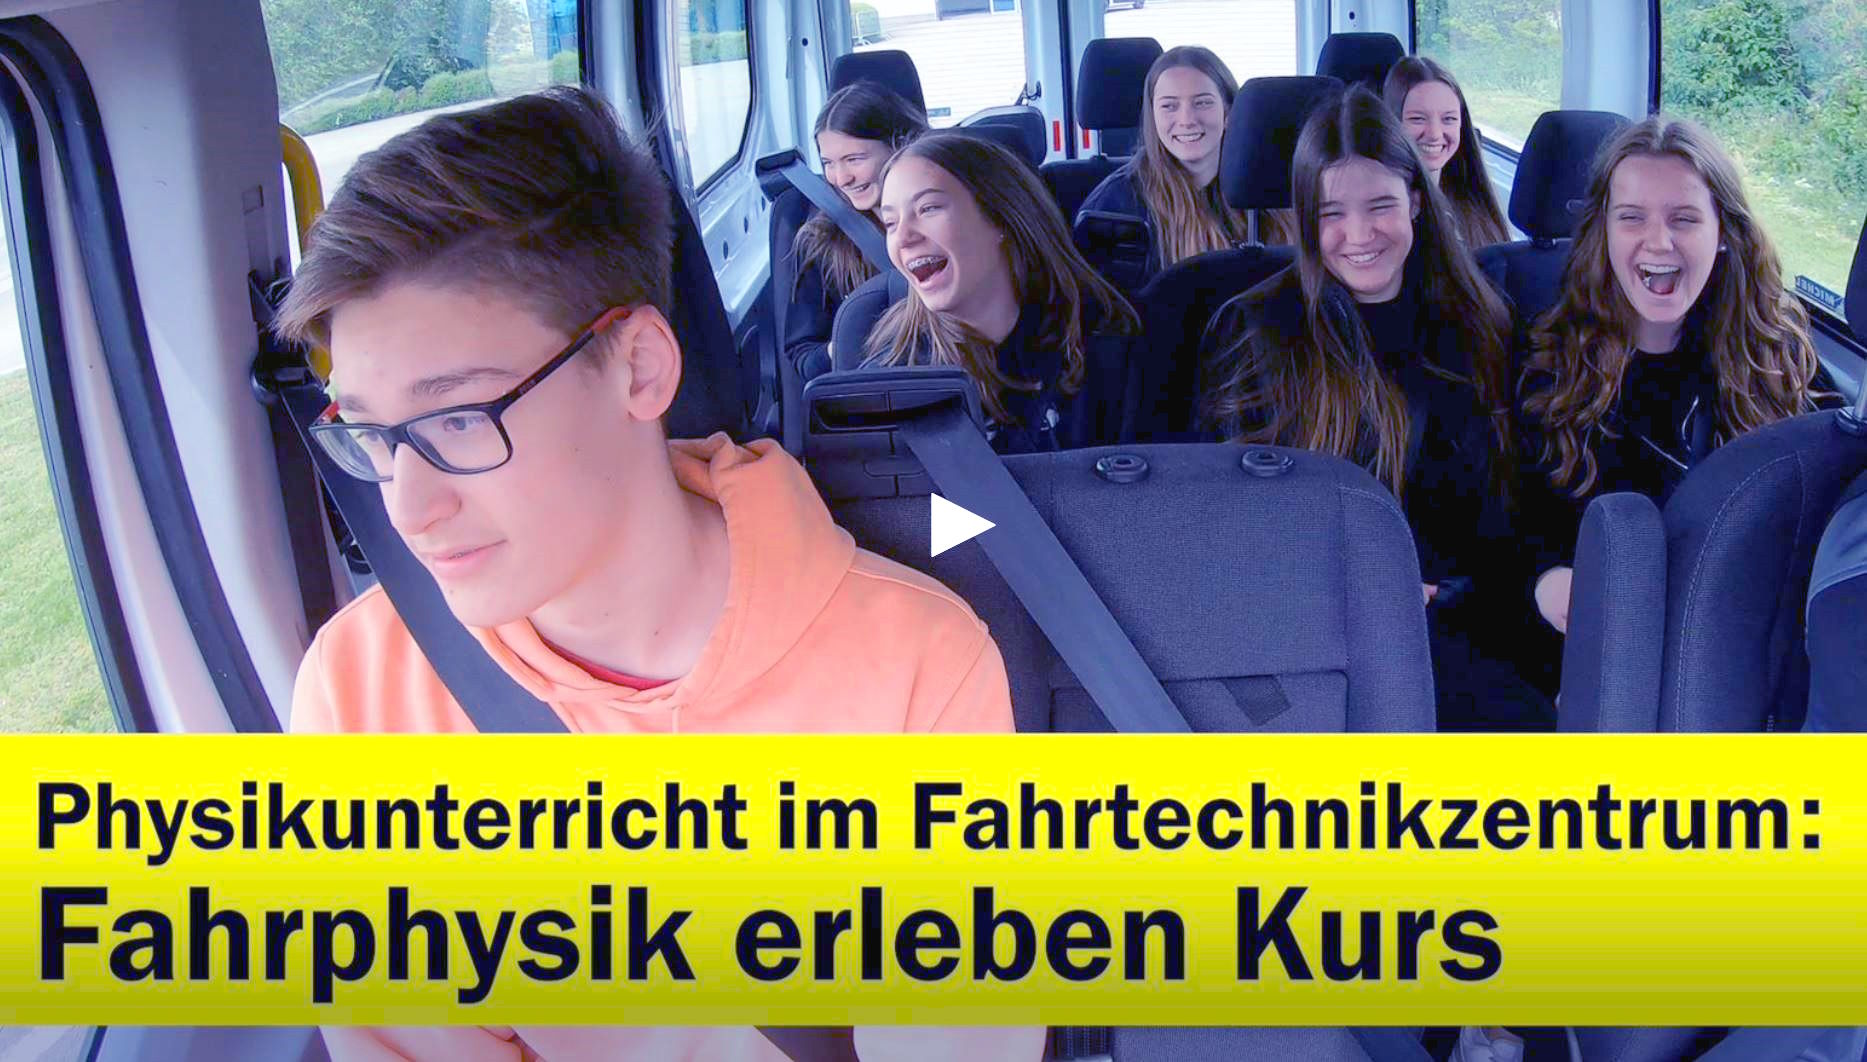 Standbild zum Video: 7 Jugendliche im Kleinbus, darunter Text "Physikunterricht im Fahrtechnikzentrum: Fahrphysik erleben Kurs"